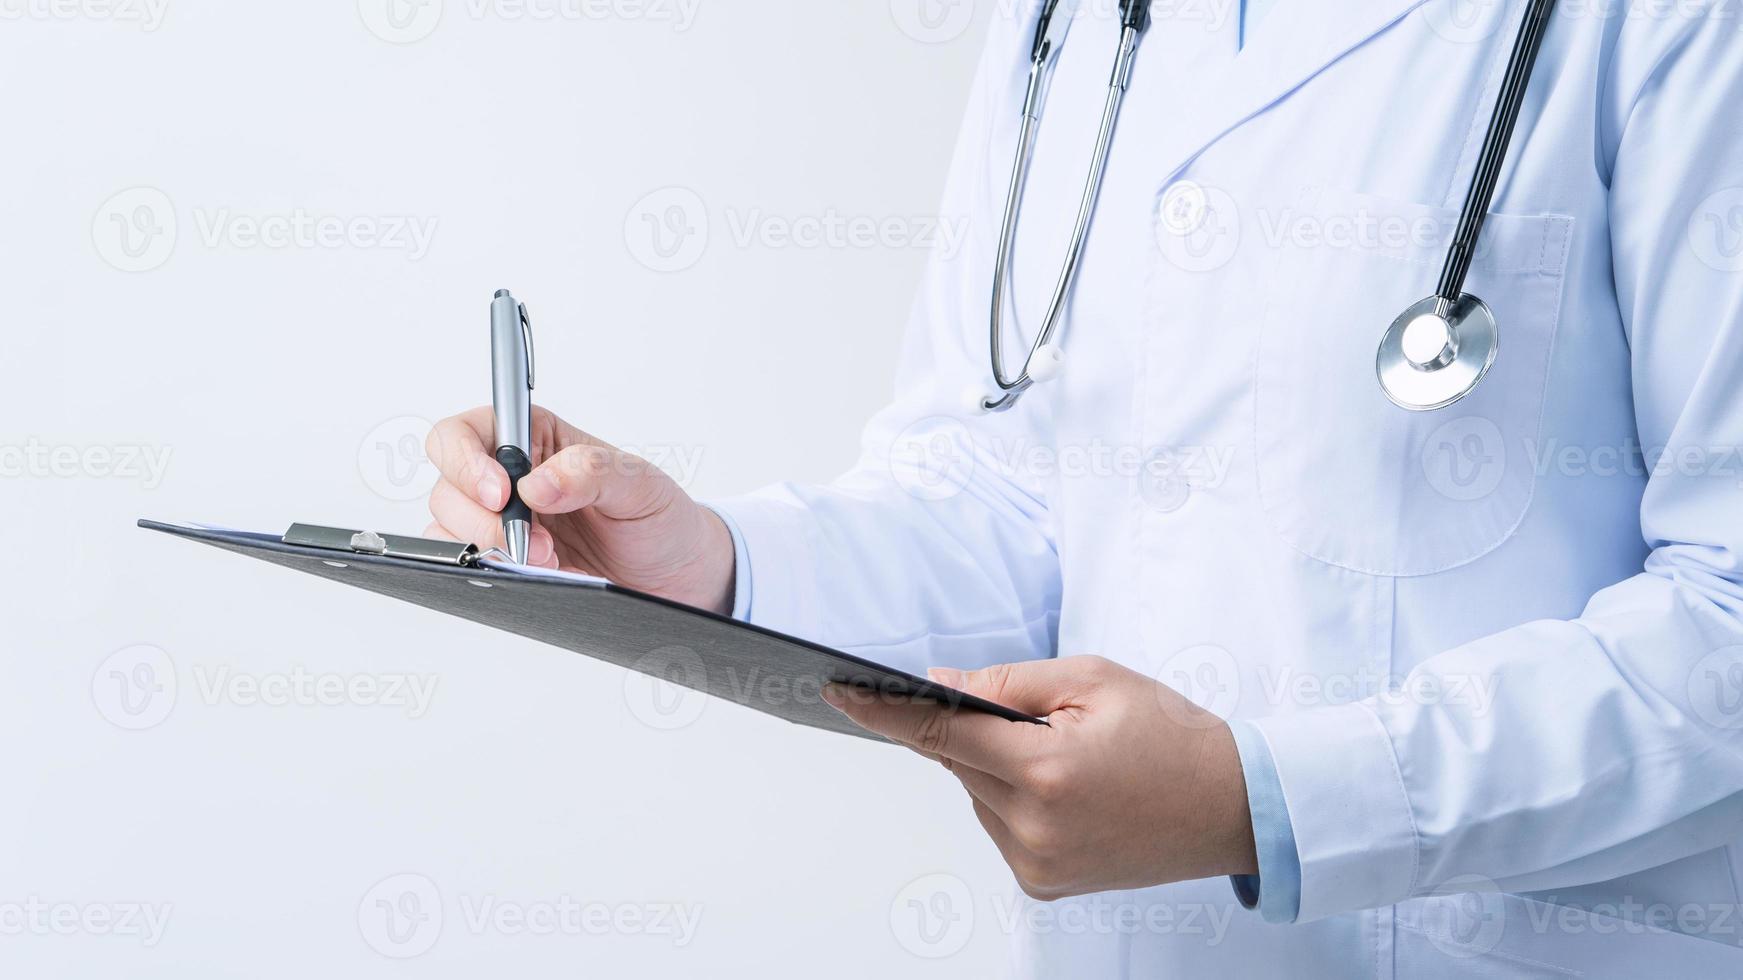 médico com estetoscópio no jaleco branco segurando a prancheta, escrevendo diagnóstico de registro médico, isolado no fundo branco, close-up, vista recortada. foto